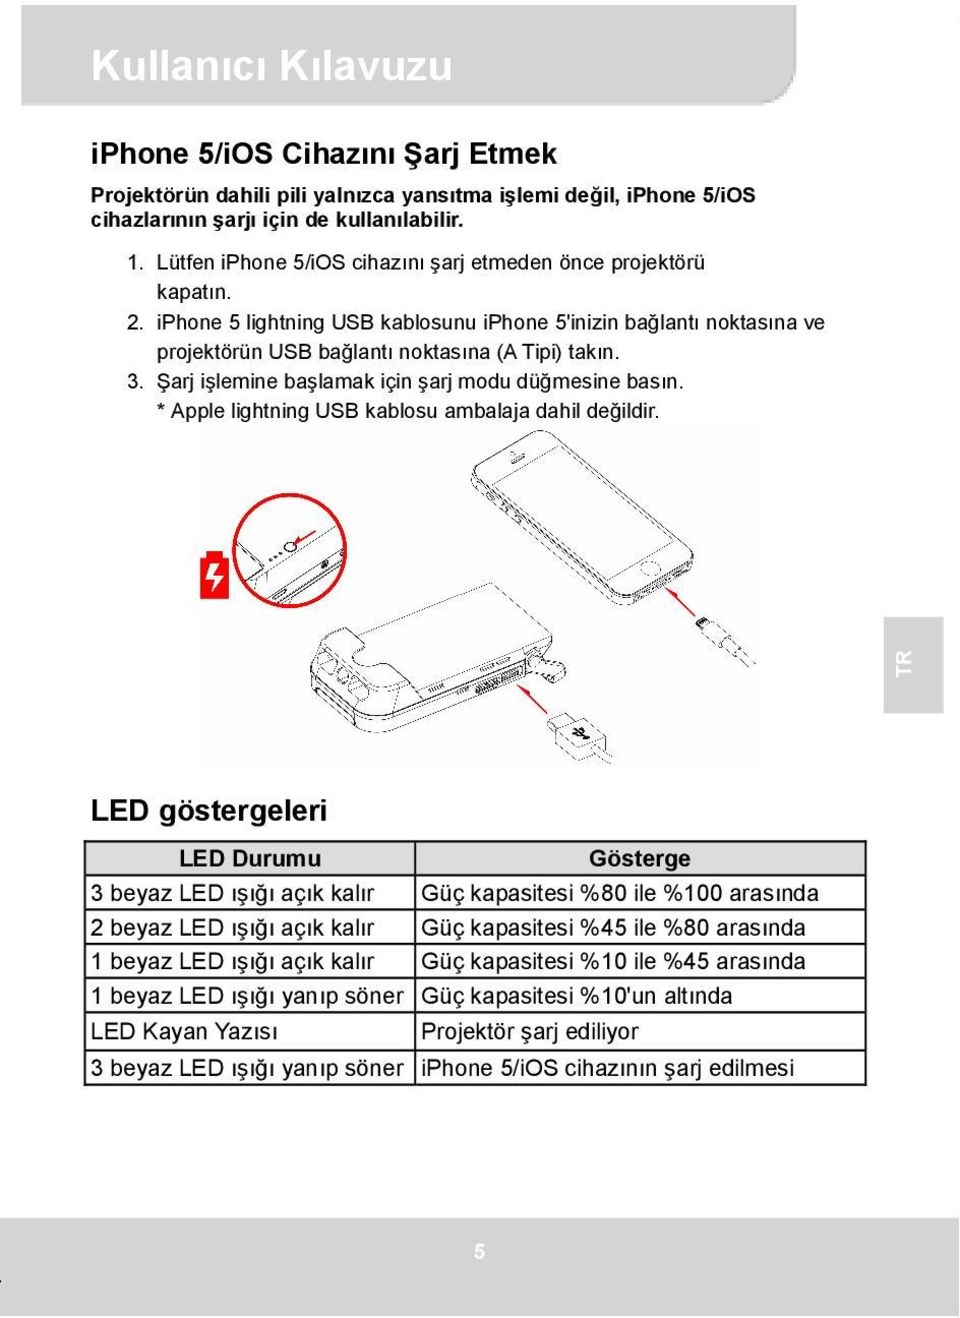 Şarj işlemine başlamak için şarj modu düğmesine basın. * Apple lightning USB kablosu ambalaja dahil değildir.